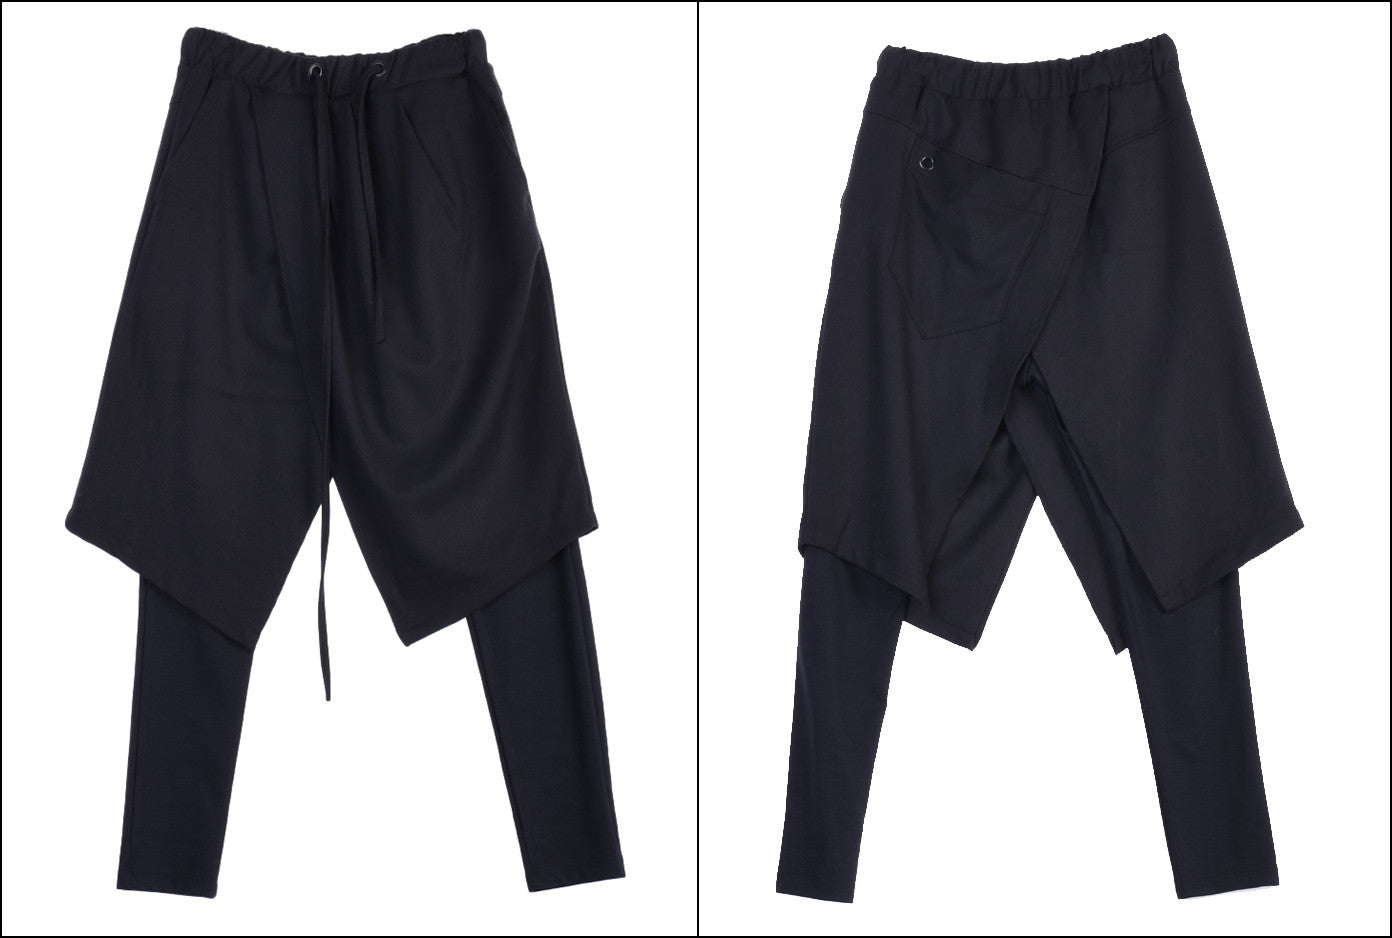 Black Skirt Layer Lounge Pants Side and Back Pocket Jogger Harem